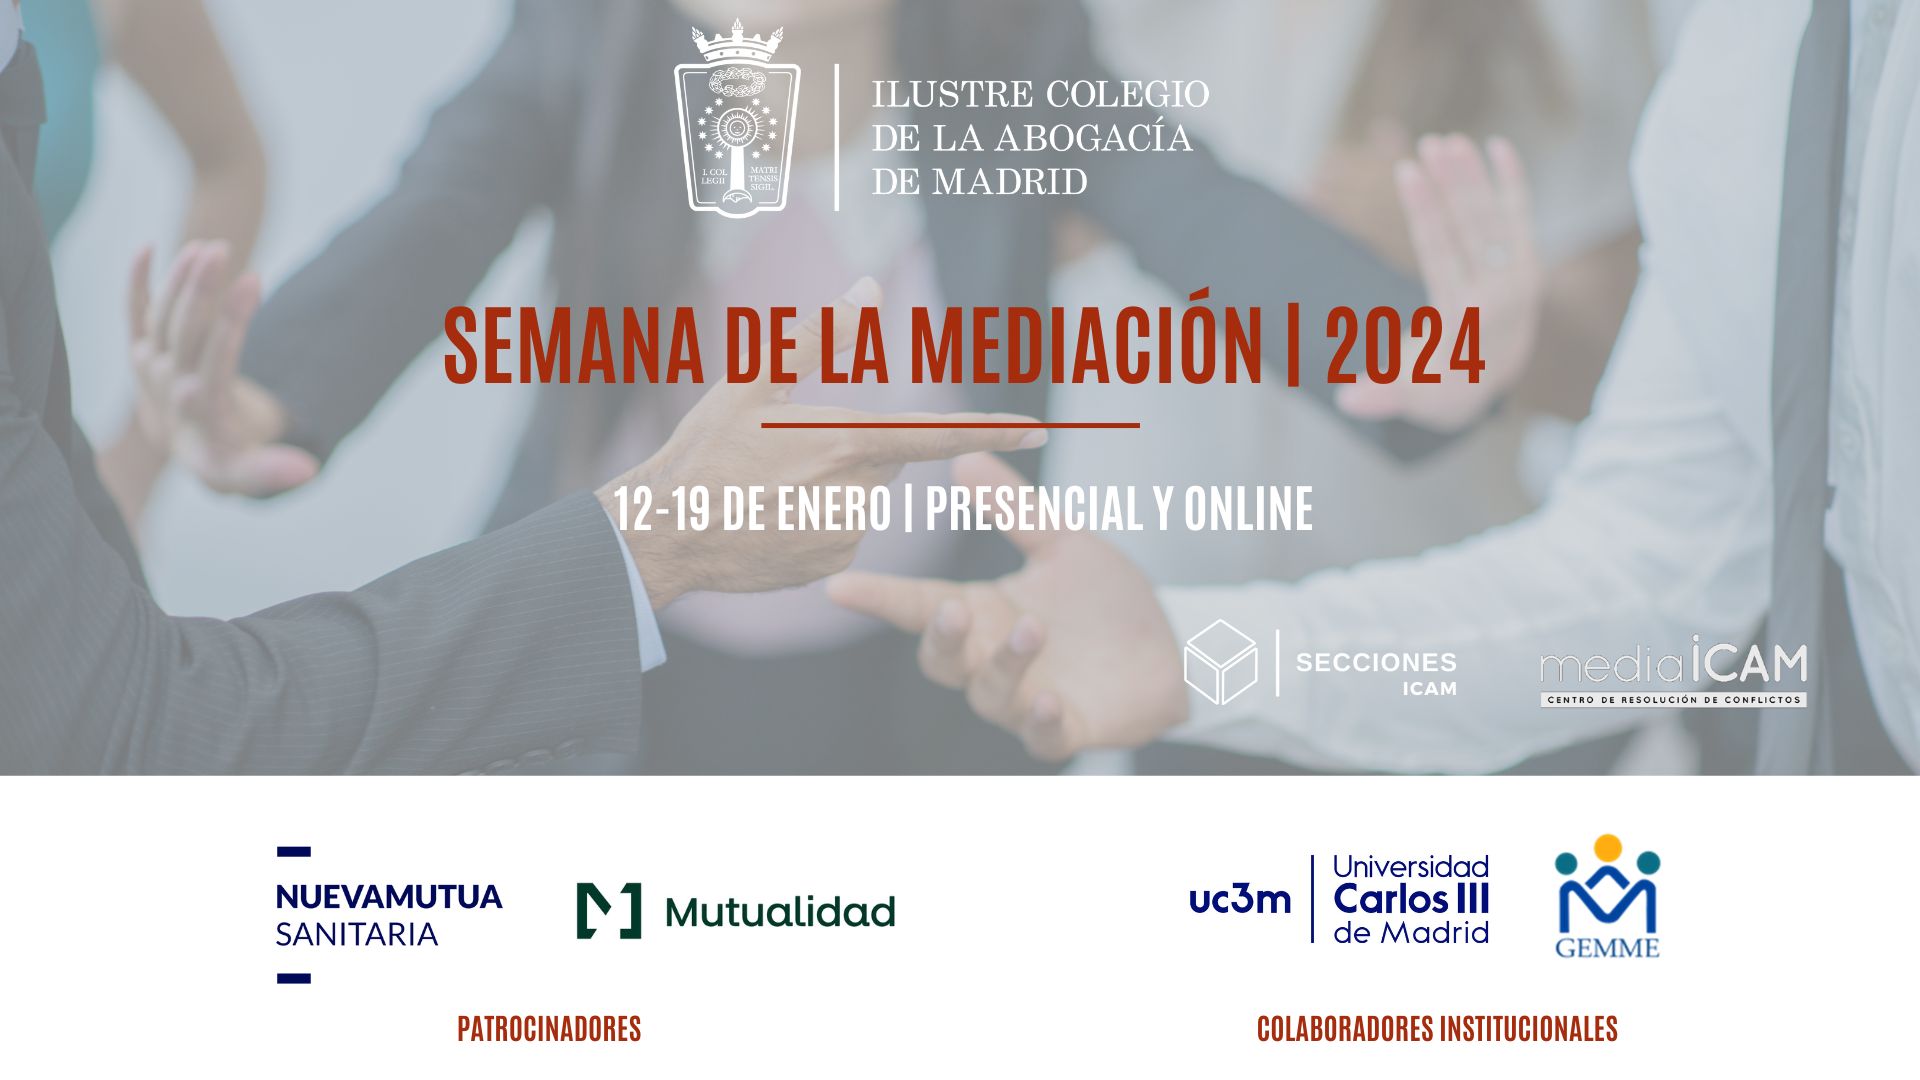 El Ilustre Colegio de la Abogacía de Madrid celebra su Semana de la Mediación del 12 al 19 de enero de 2024